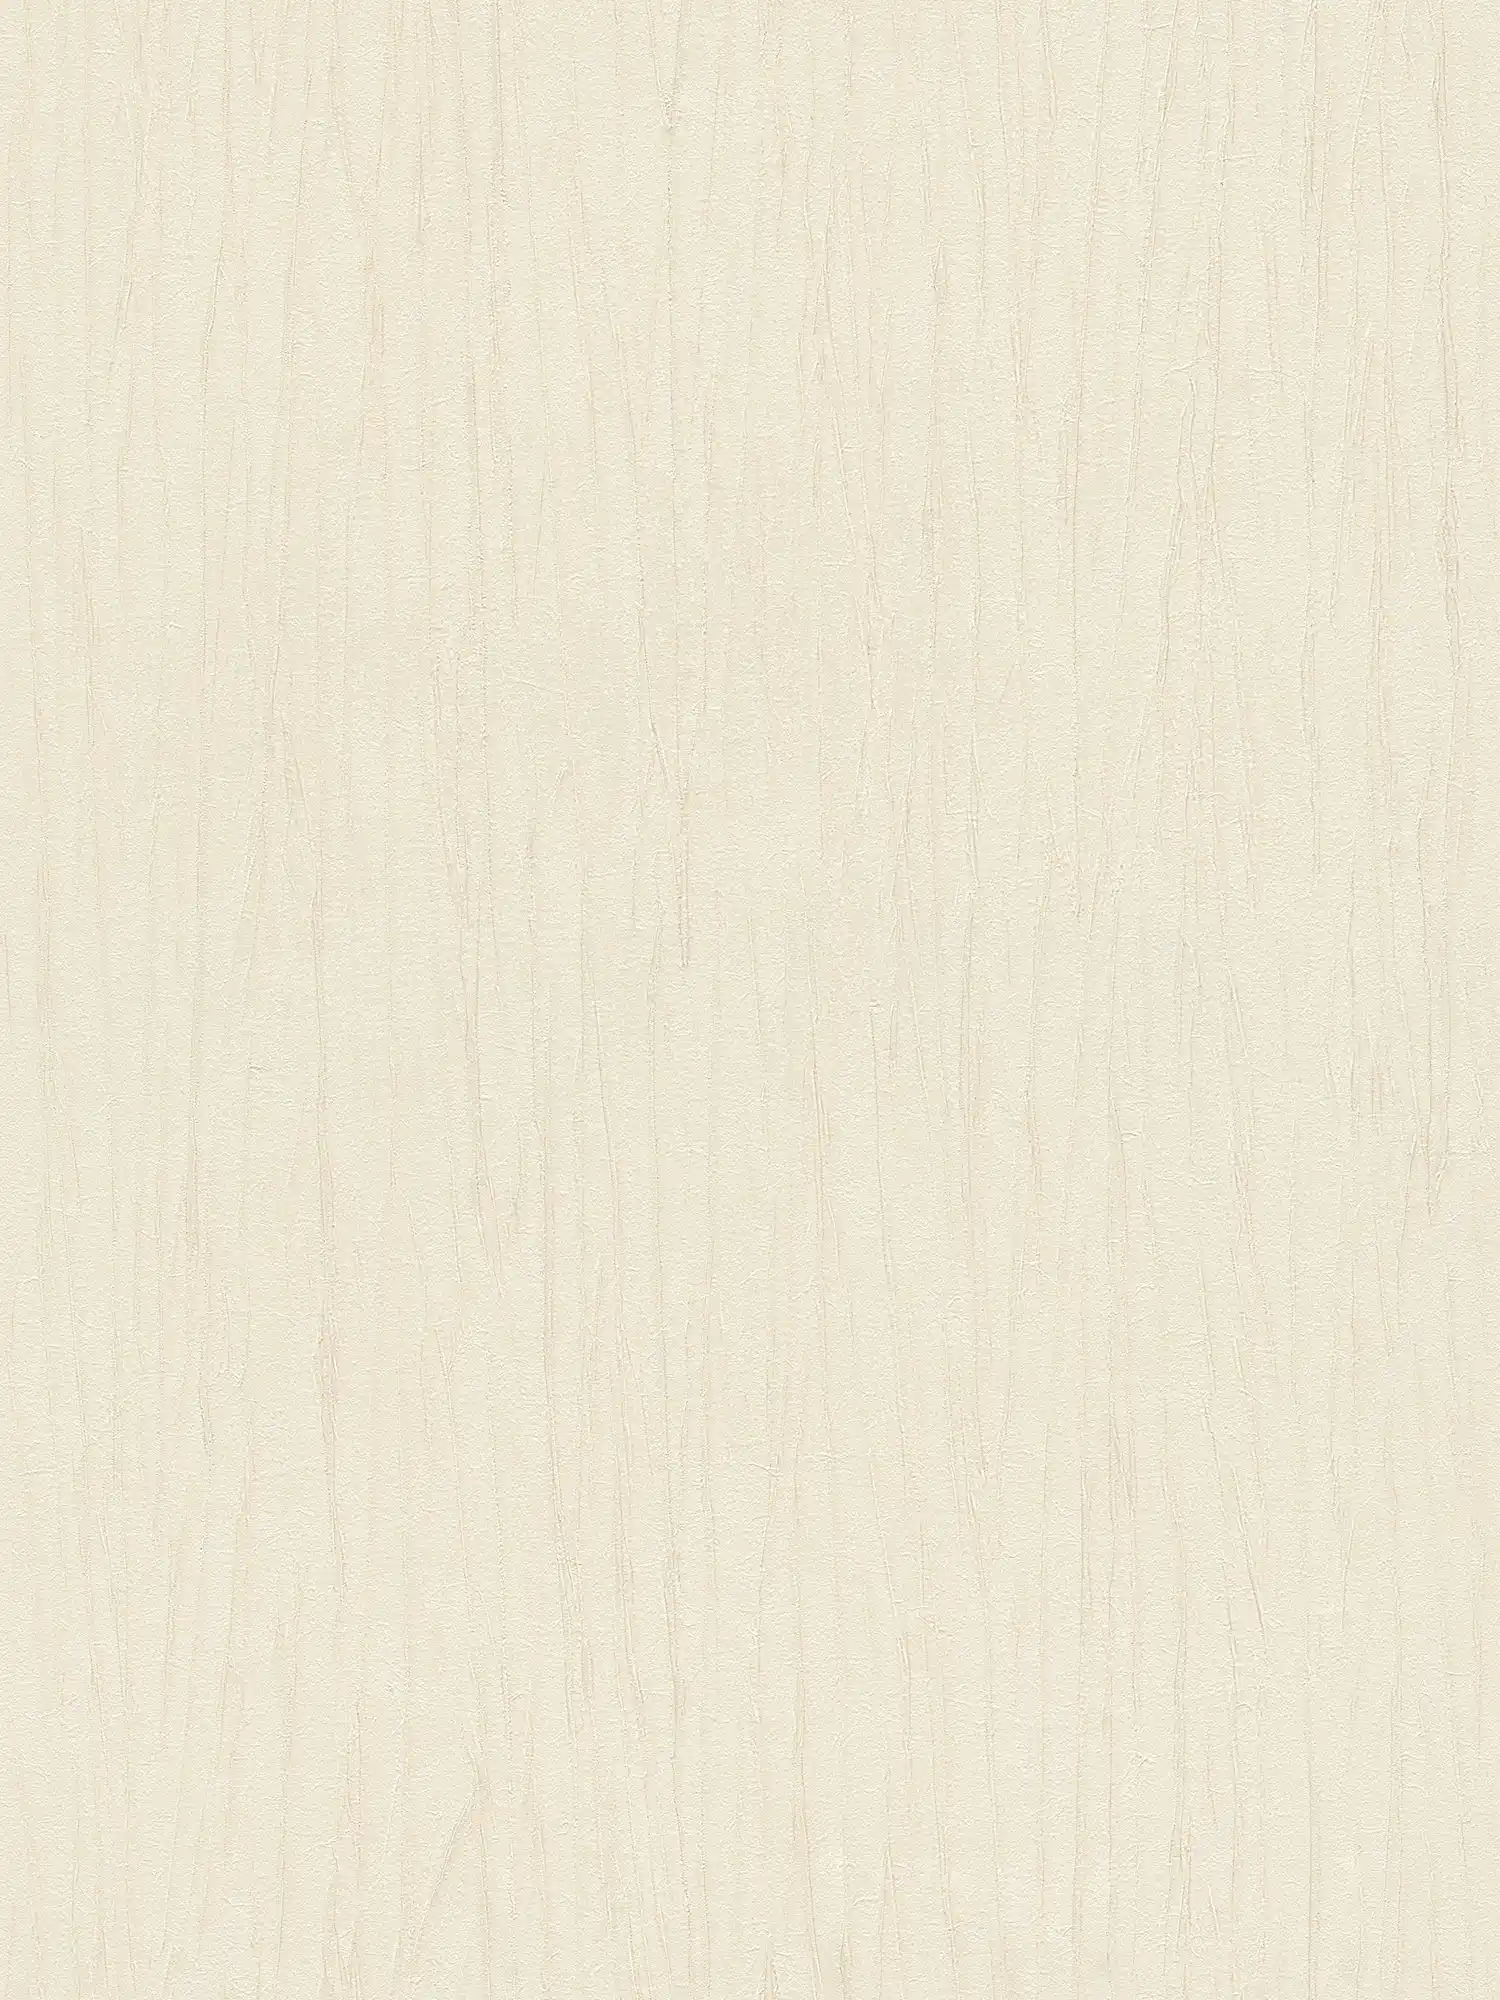 behang crush structuur & metallic effect - beige, crème
